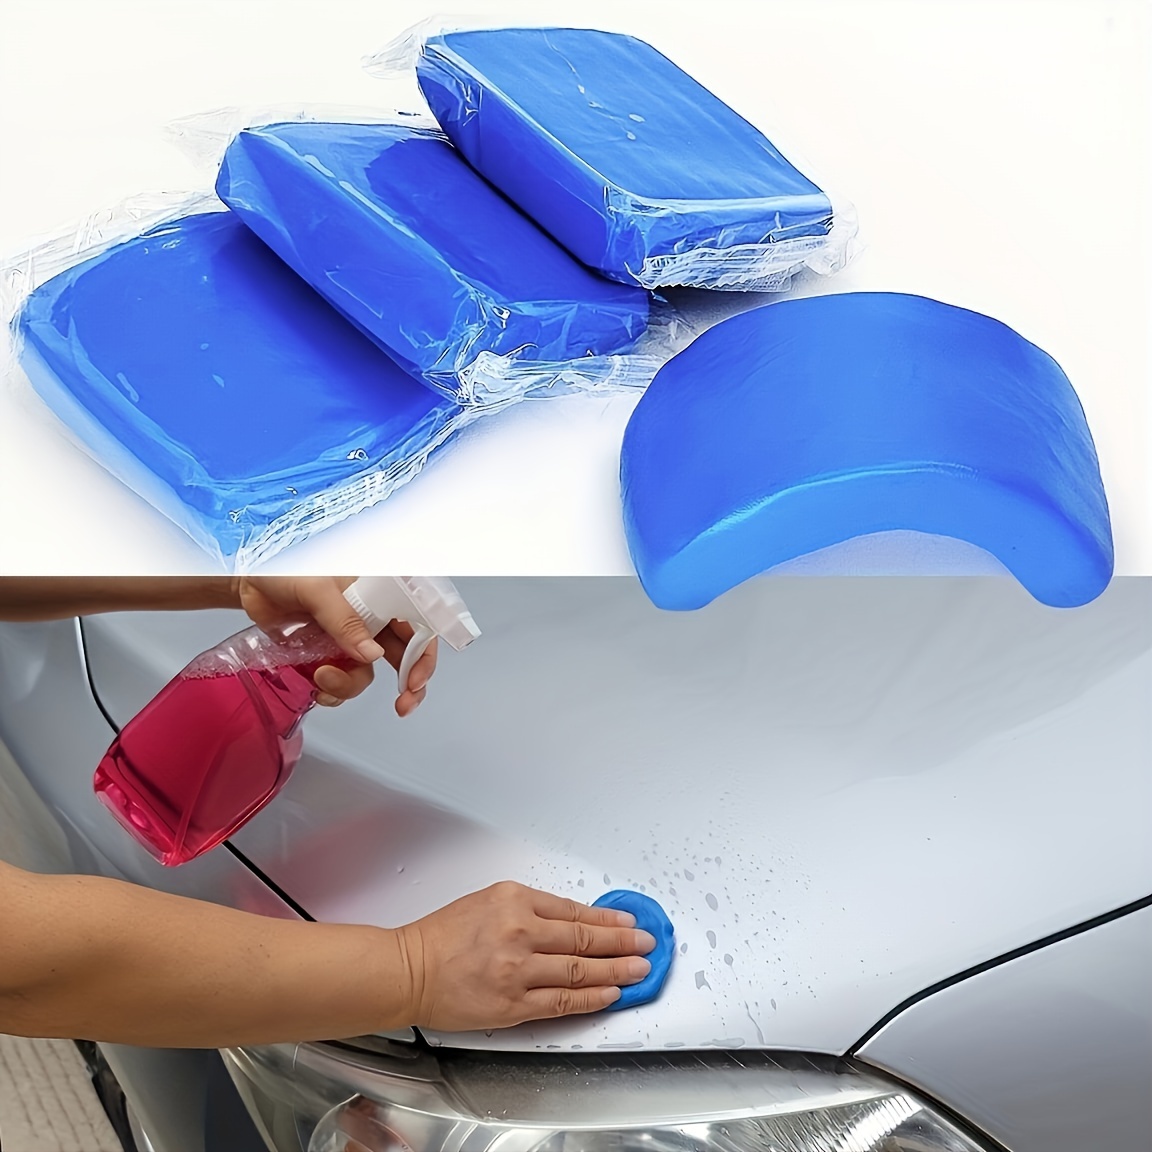 Bumper Etc. Car Clean Clay Bar Car Clean Clay Bar Auto Vehicle Car Clay Bar  Kit Detailing Remove Wash Blue Mud - AliExpress